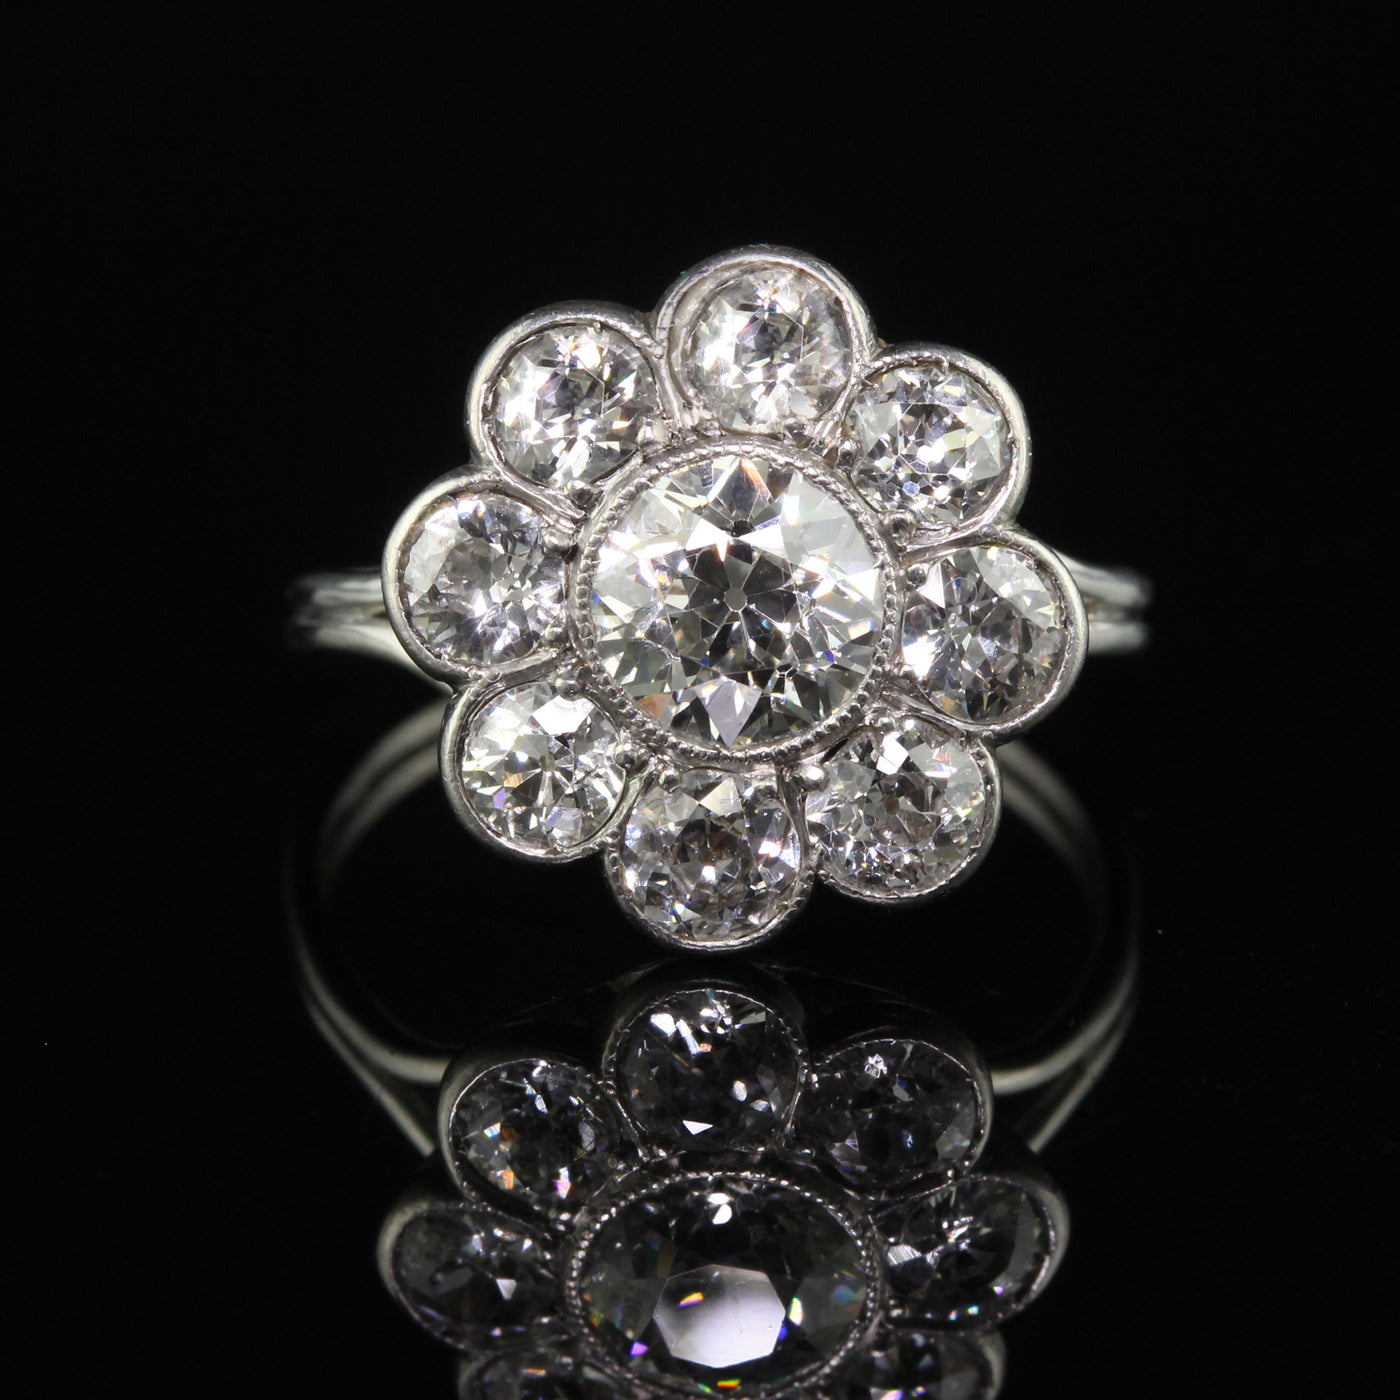 Antique Art Deco Platinum Old European Cut Diamond Cluster Engagement Ring